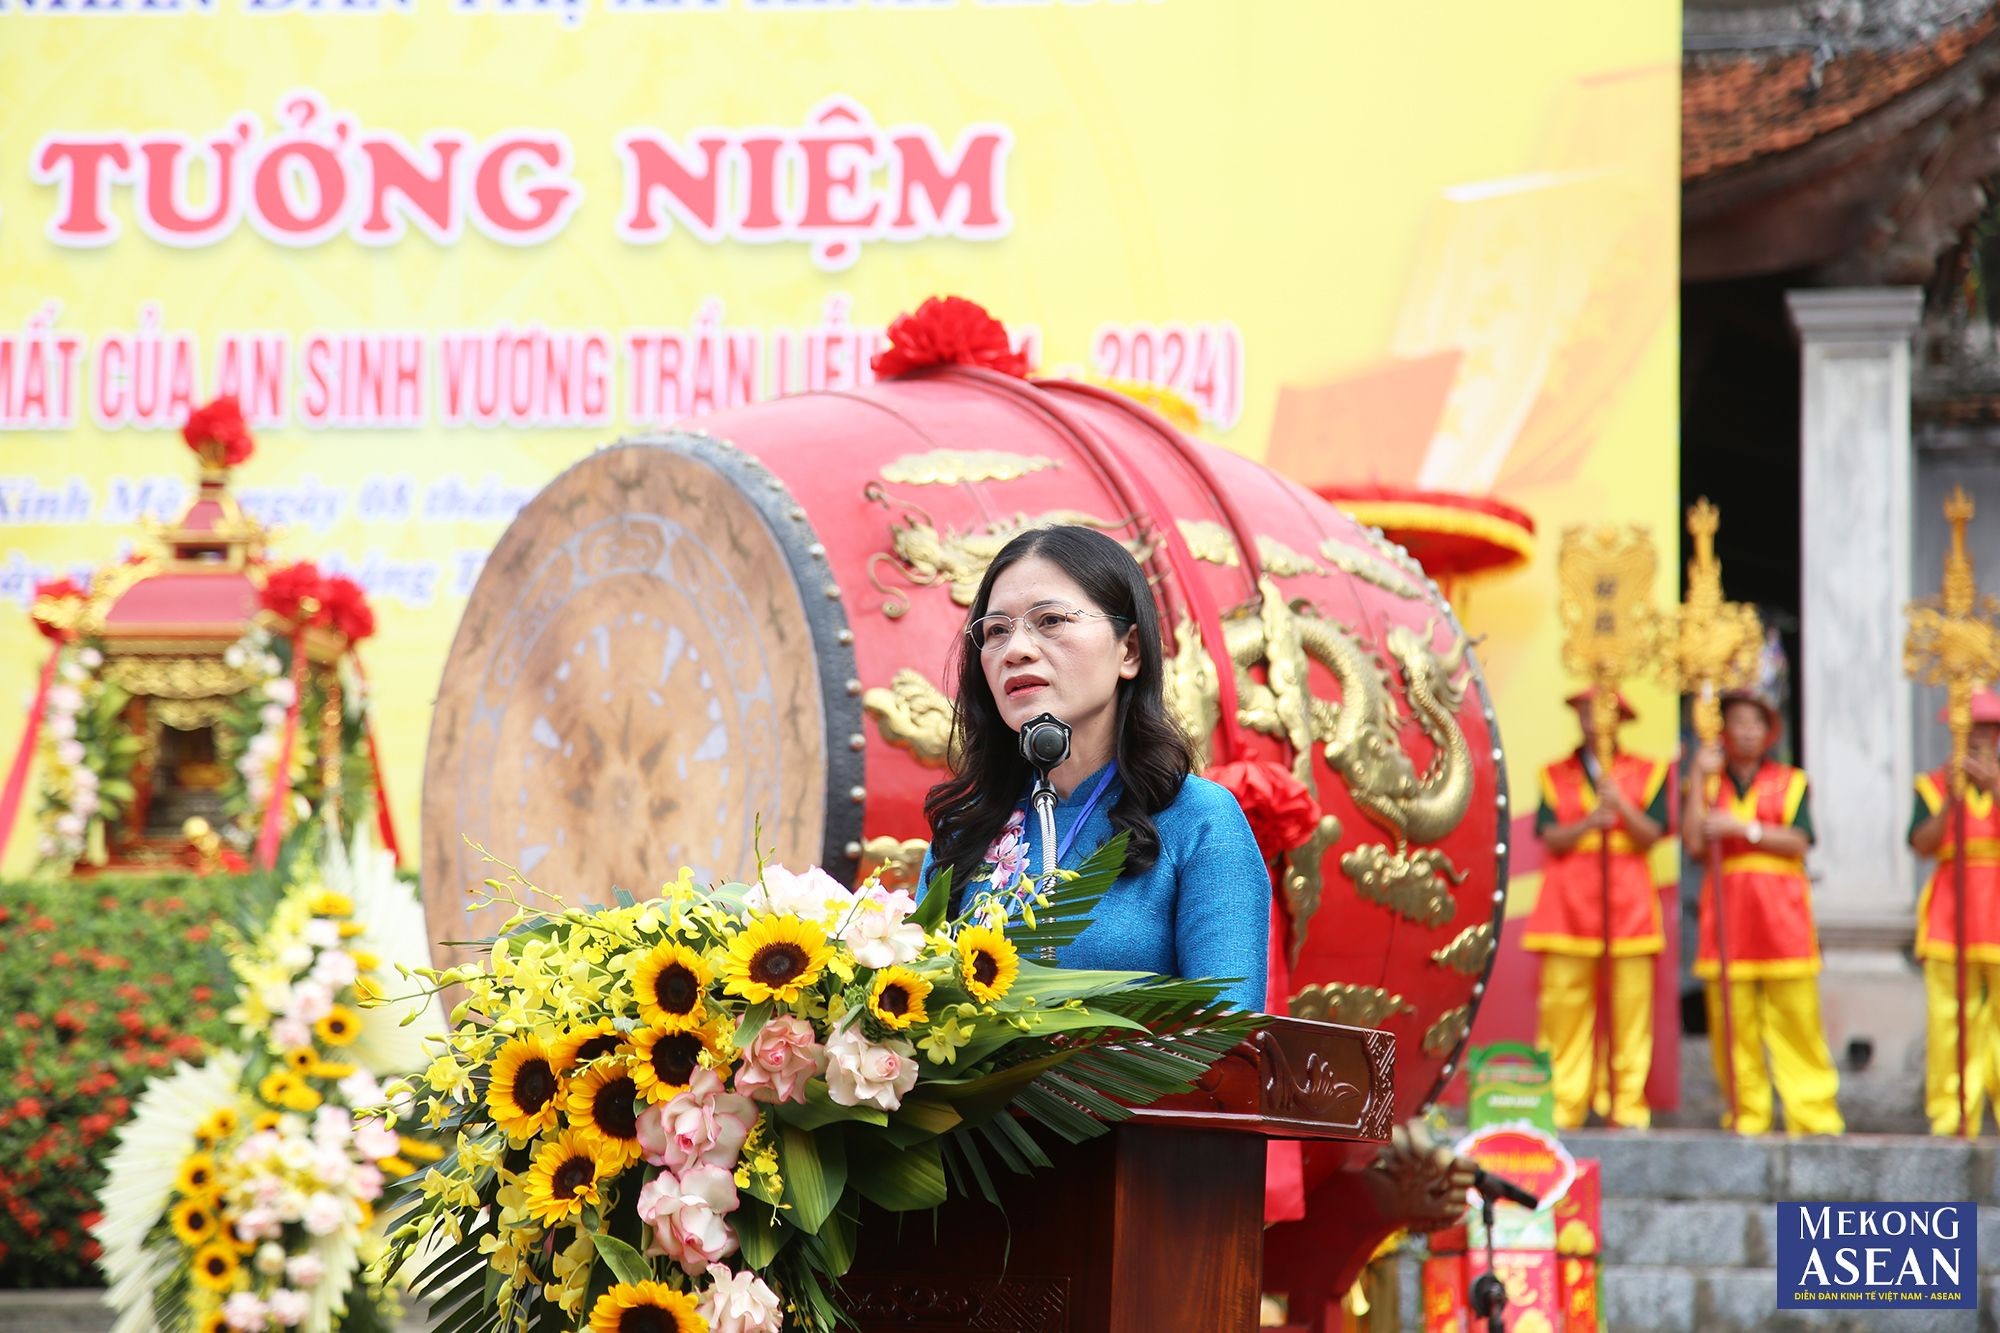 B&agrave; Mạc Thị Huyền, Ph&oacute; Chủ tịch UBND thị x&atilde; Kinh M&ocirc;n đọc diễn văn tại buổi lễ.